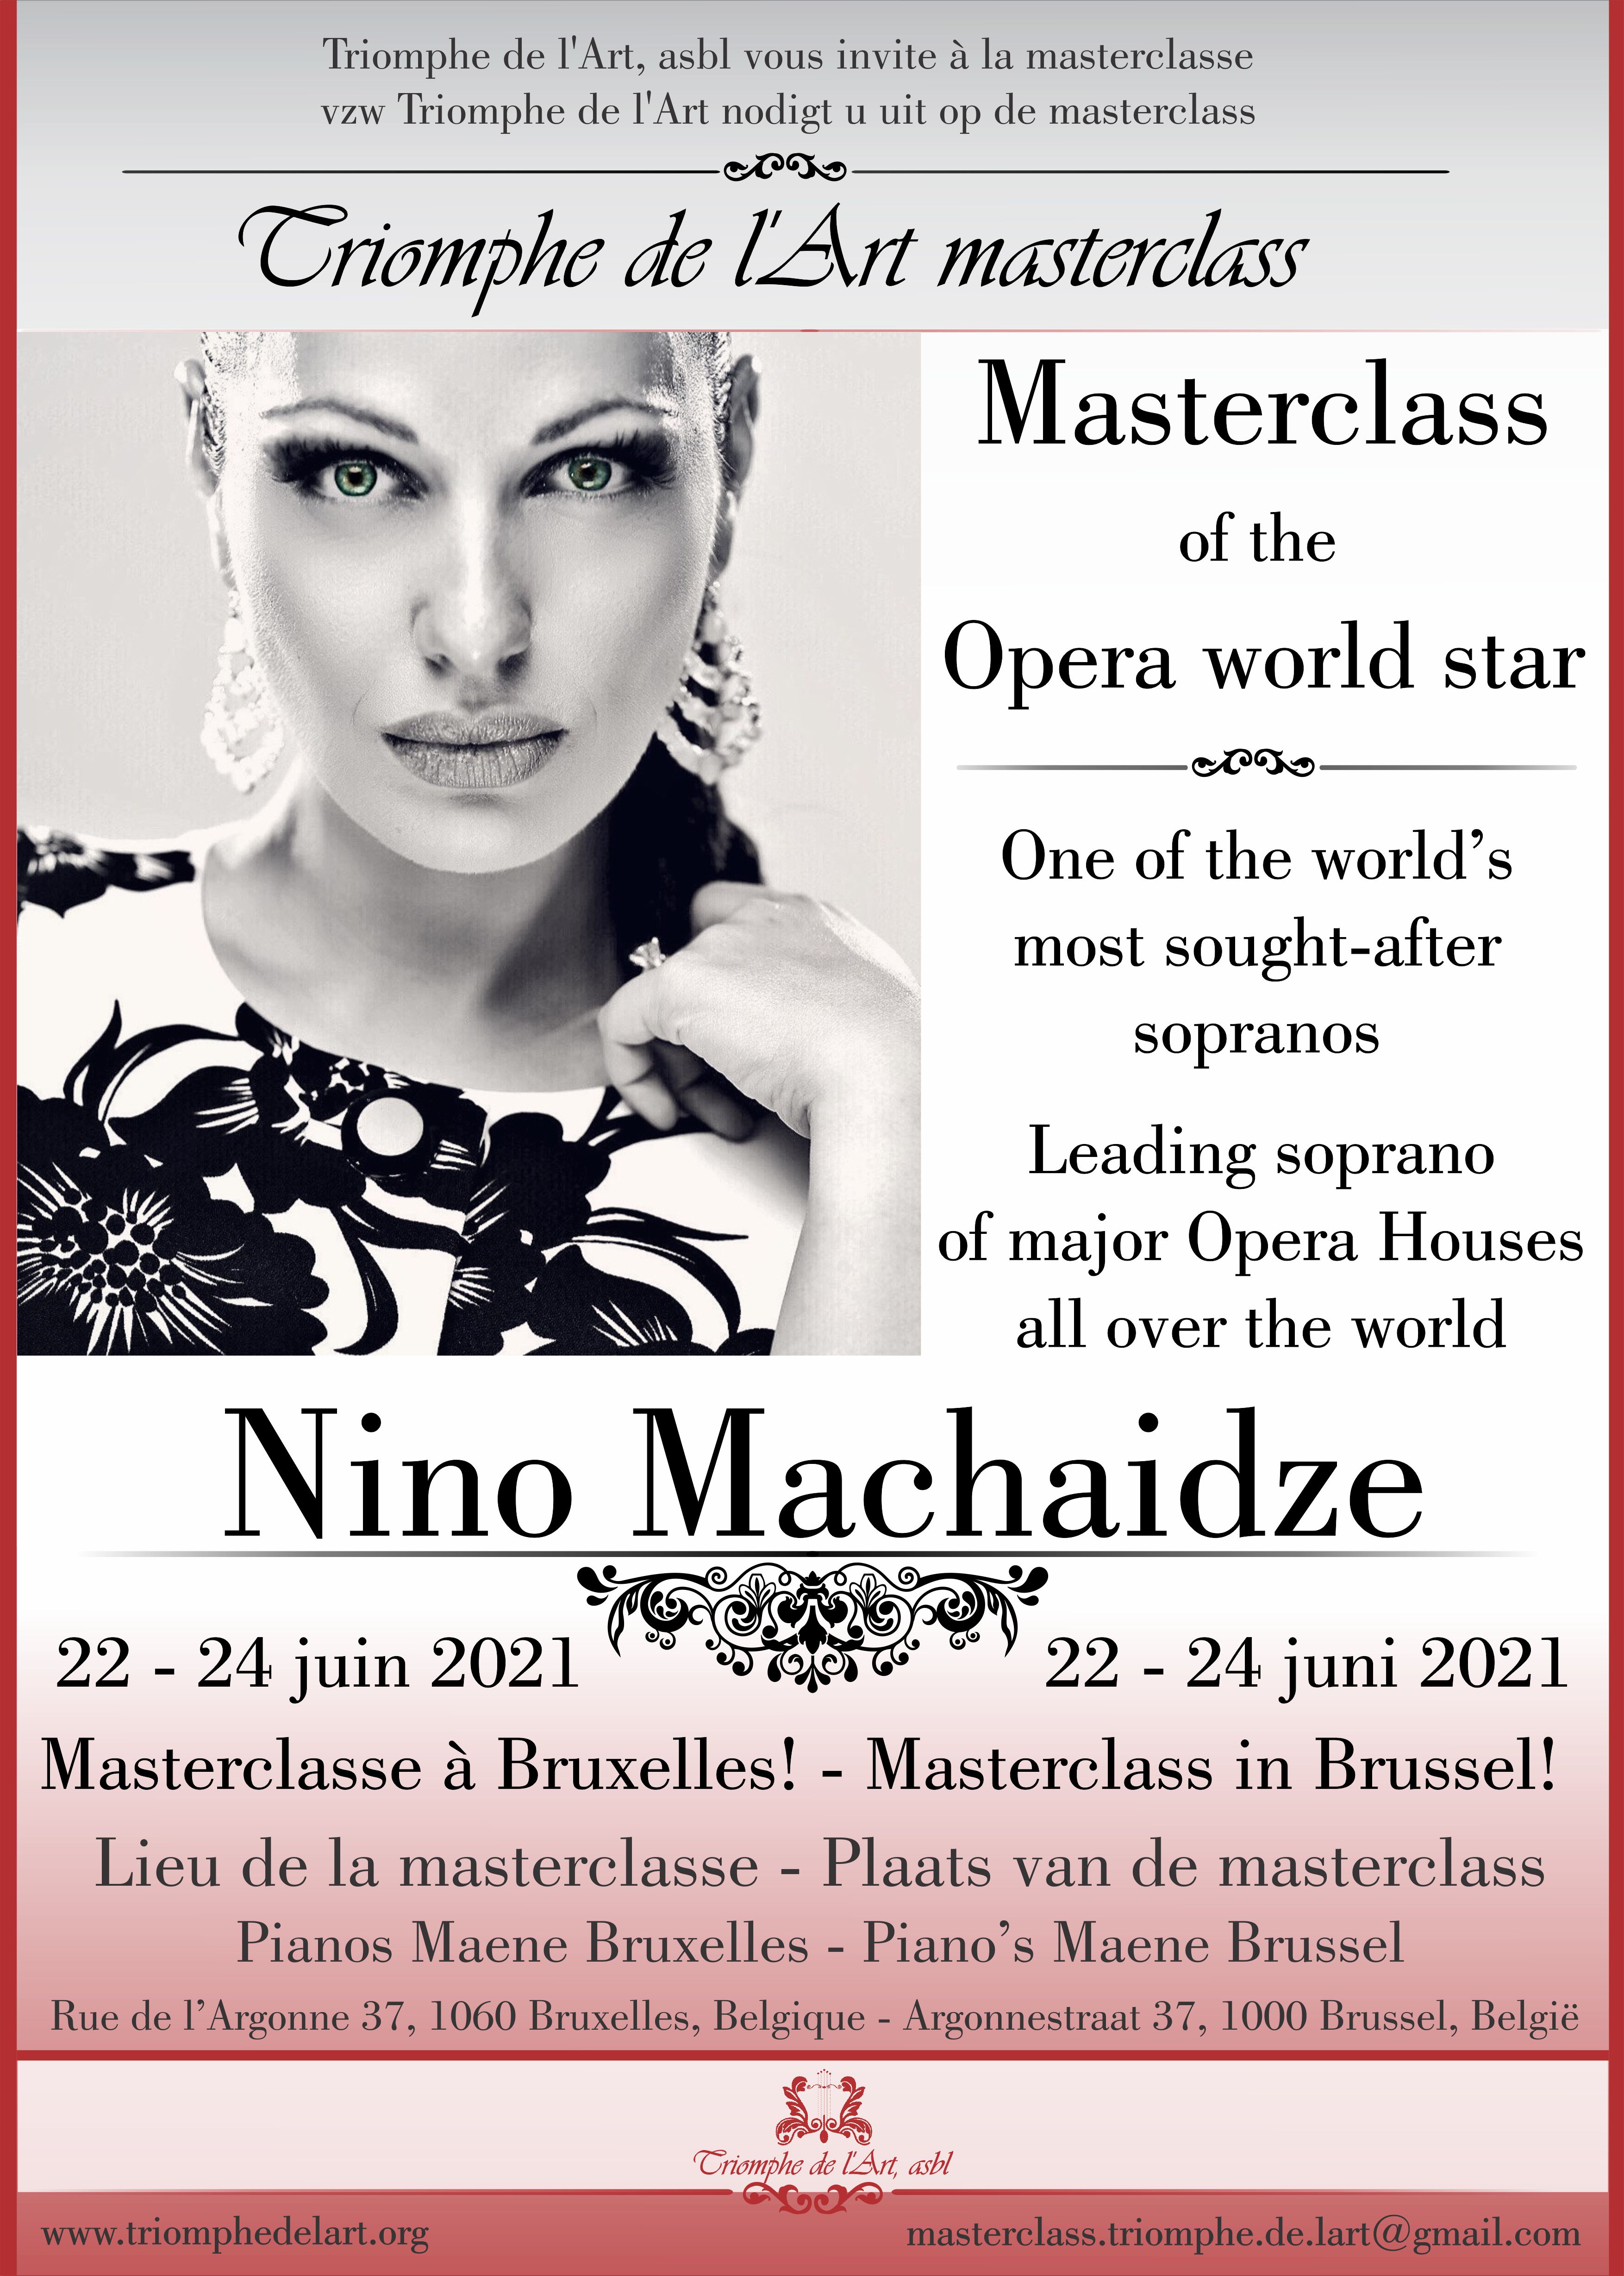 Nino Machaidze masterclasse